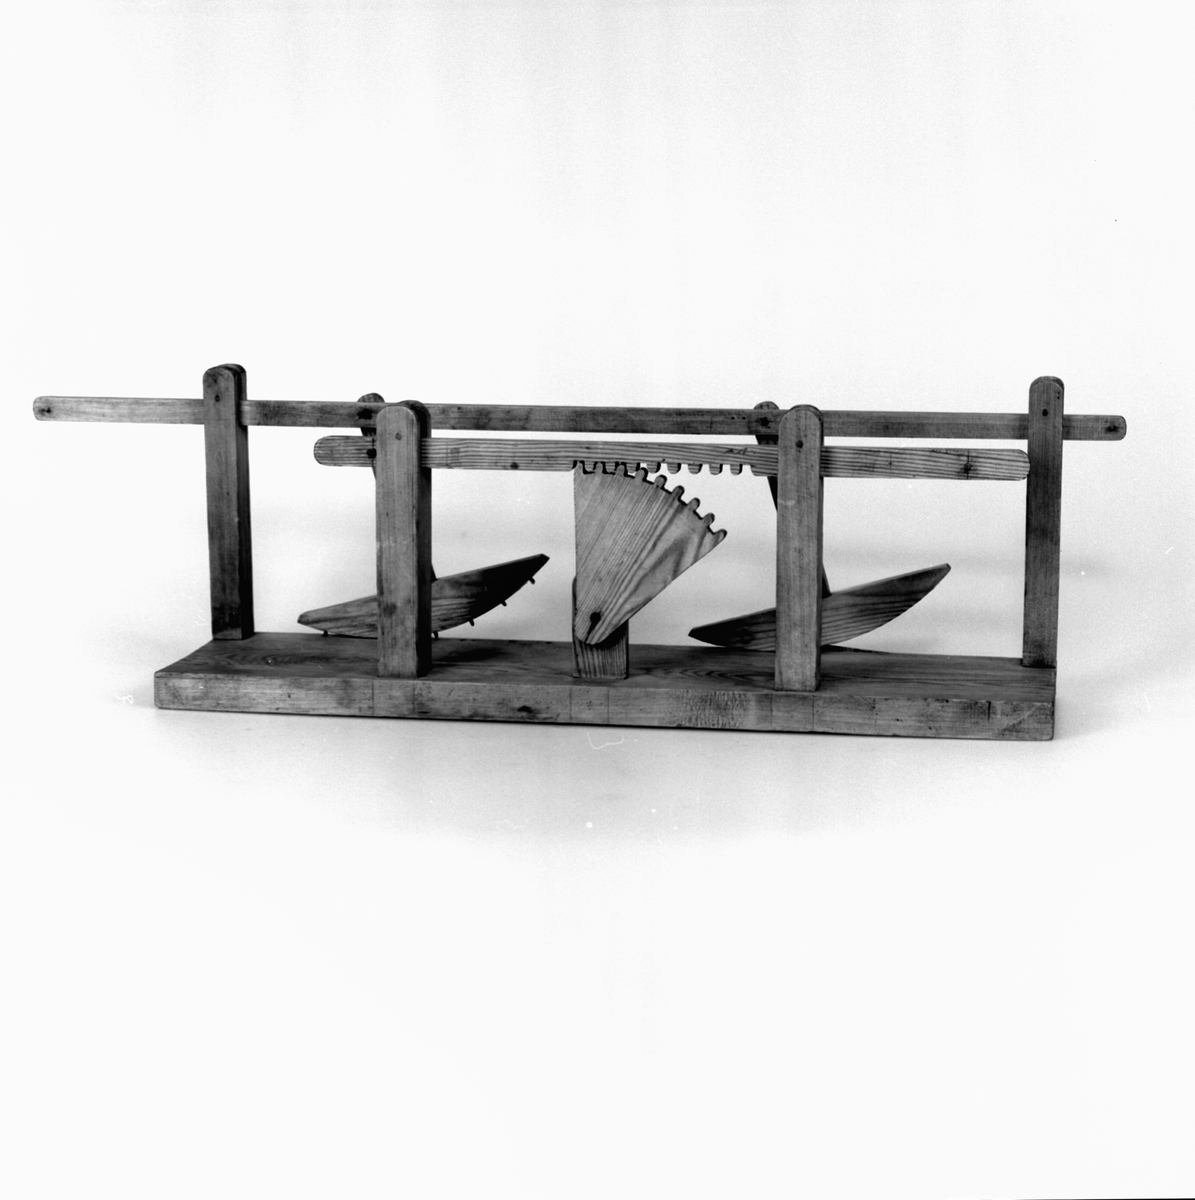 Modell ur Polhems mekaniska alfabet. Text på föremålet: XII, XIII. Exempel på hur man kan få de långa upp- och nedfodringsstängerna att följa en rät linje under sin rörelse.